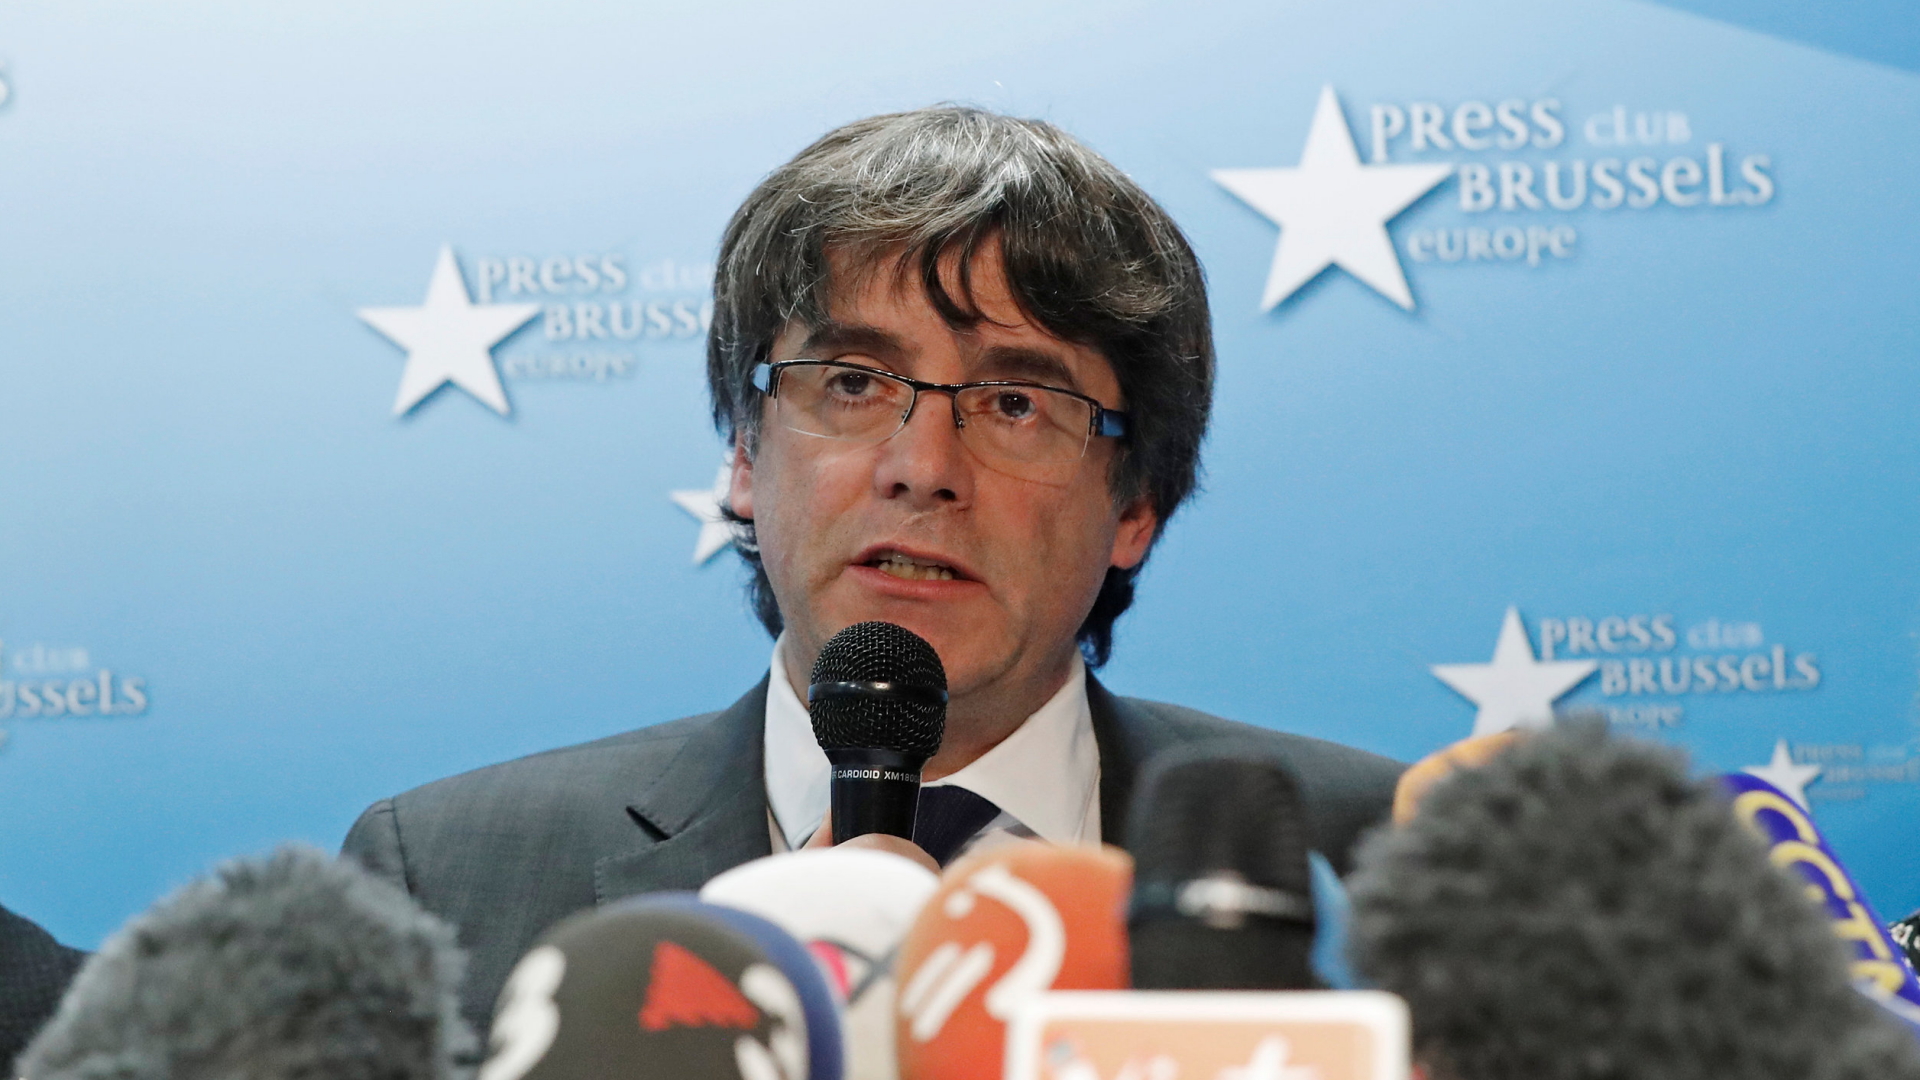 Carles Puigdemont bei einer Pressekonferenz in Brüssel